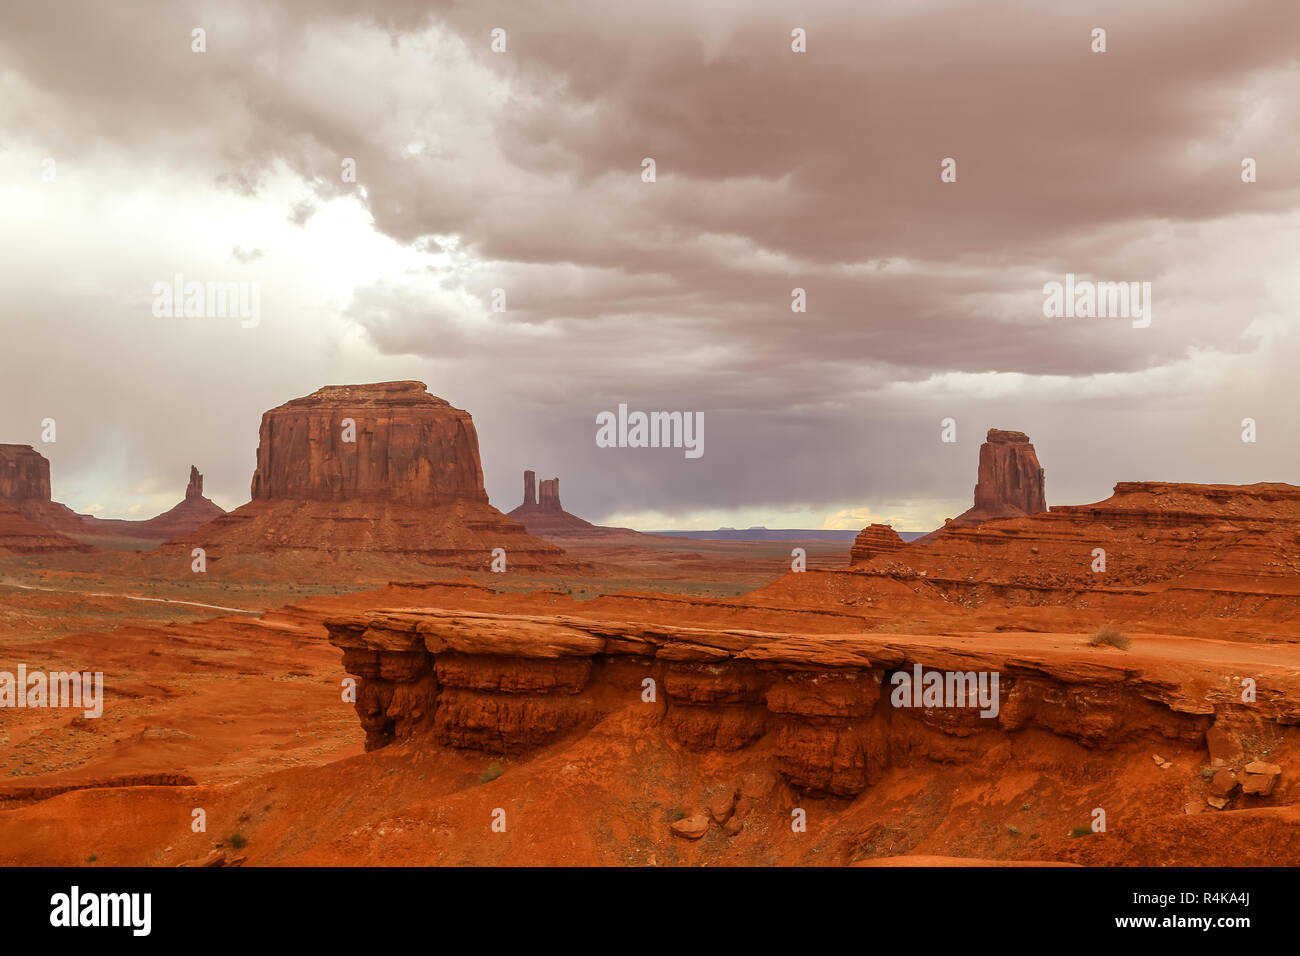 Filme von John Ford mit einem dramatischen stürmischen Himmel in der Wüste von oljato Monument Valley an der Grenze Arizona und Utah in den amerikanischen Westen Stockfoto